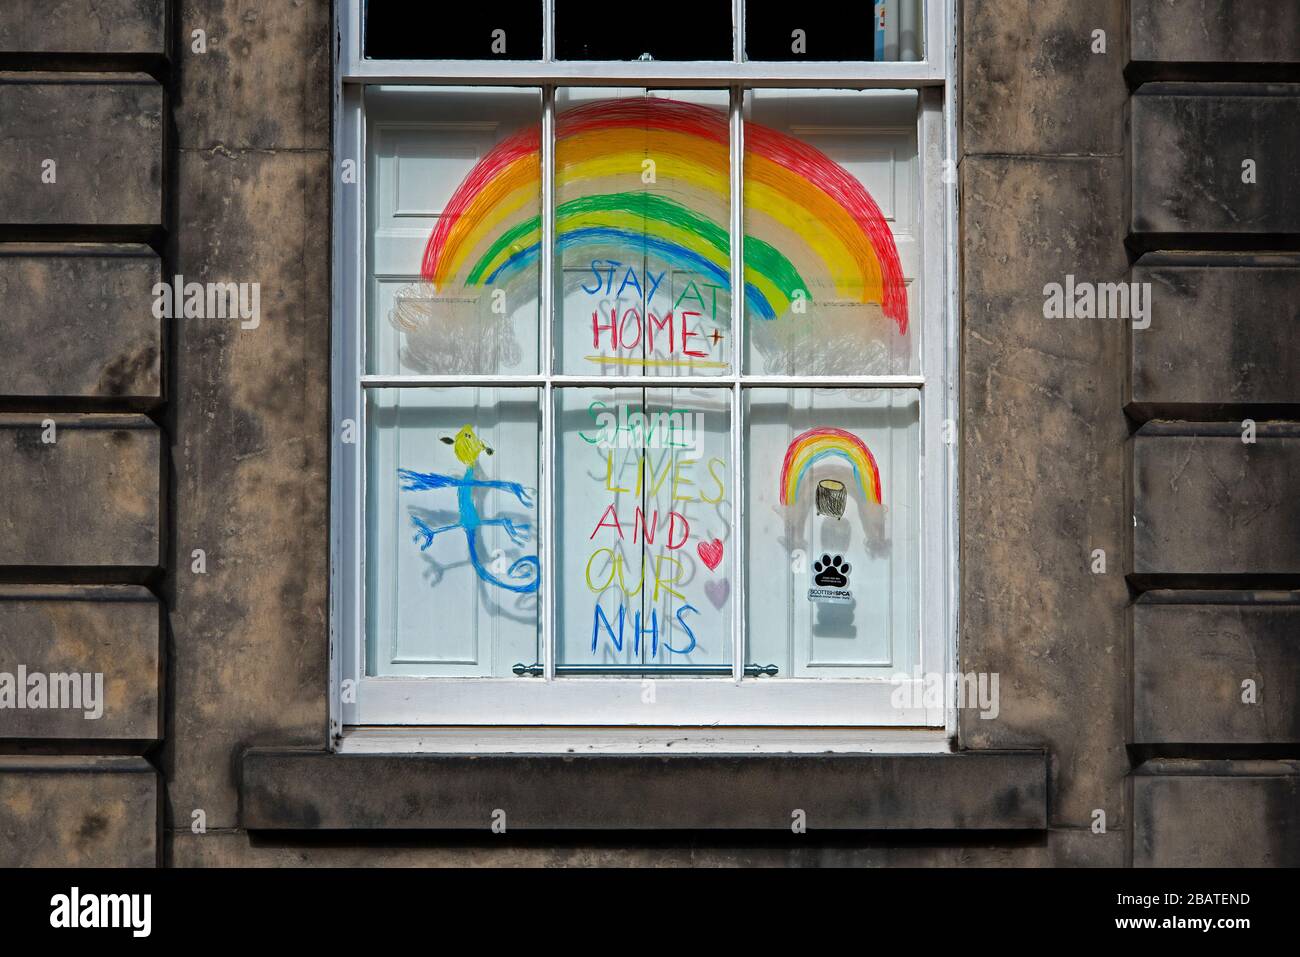 Regenbogen in einem Fenster, um die Passanten während des covid-19-Ausbruchs aufzuheitern. Neustadt, Edinburgh, Schottland, Großbritannien. Stockfoto